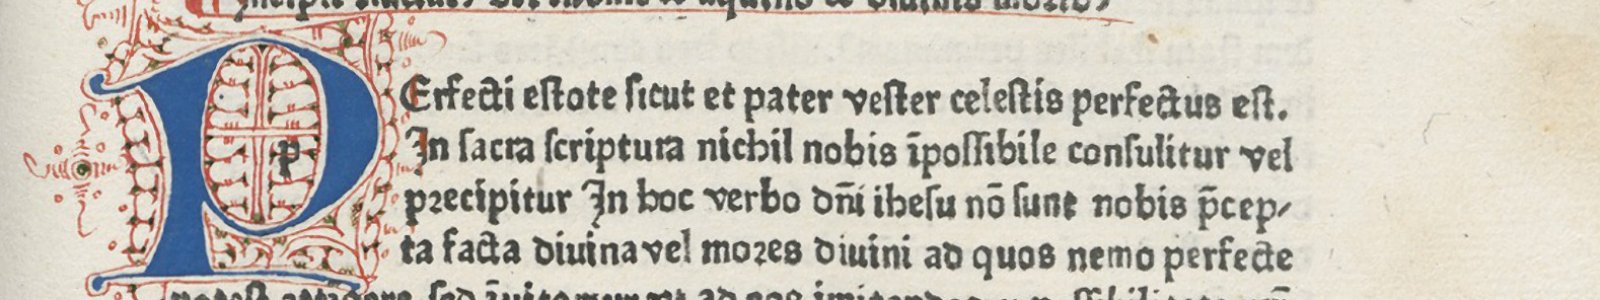 Fraai initiaal op fol. 11r, ‘De divinis moribus & De beatitudine’, 1474, uit de Bijzondere Collecties van de Universiteitsbibliotheek Utrecht